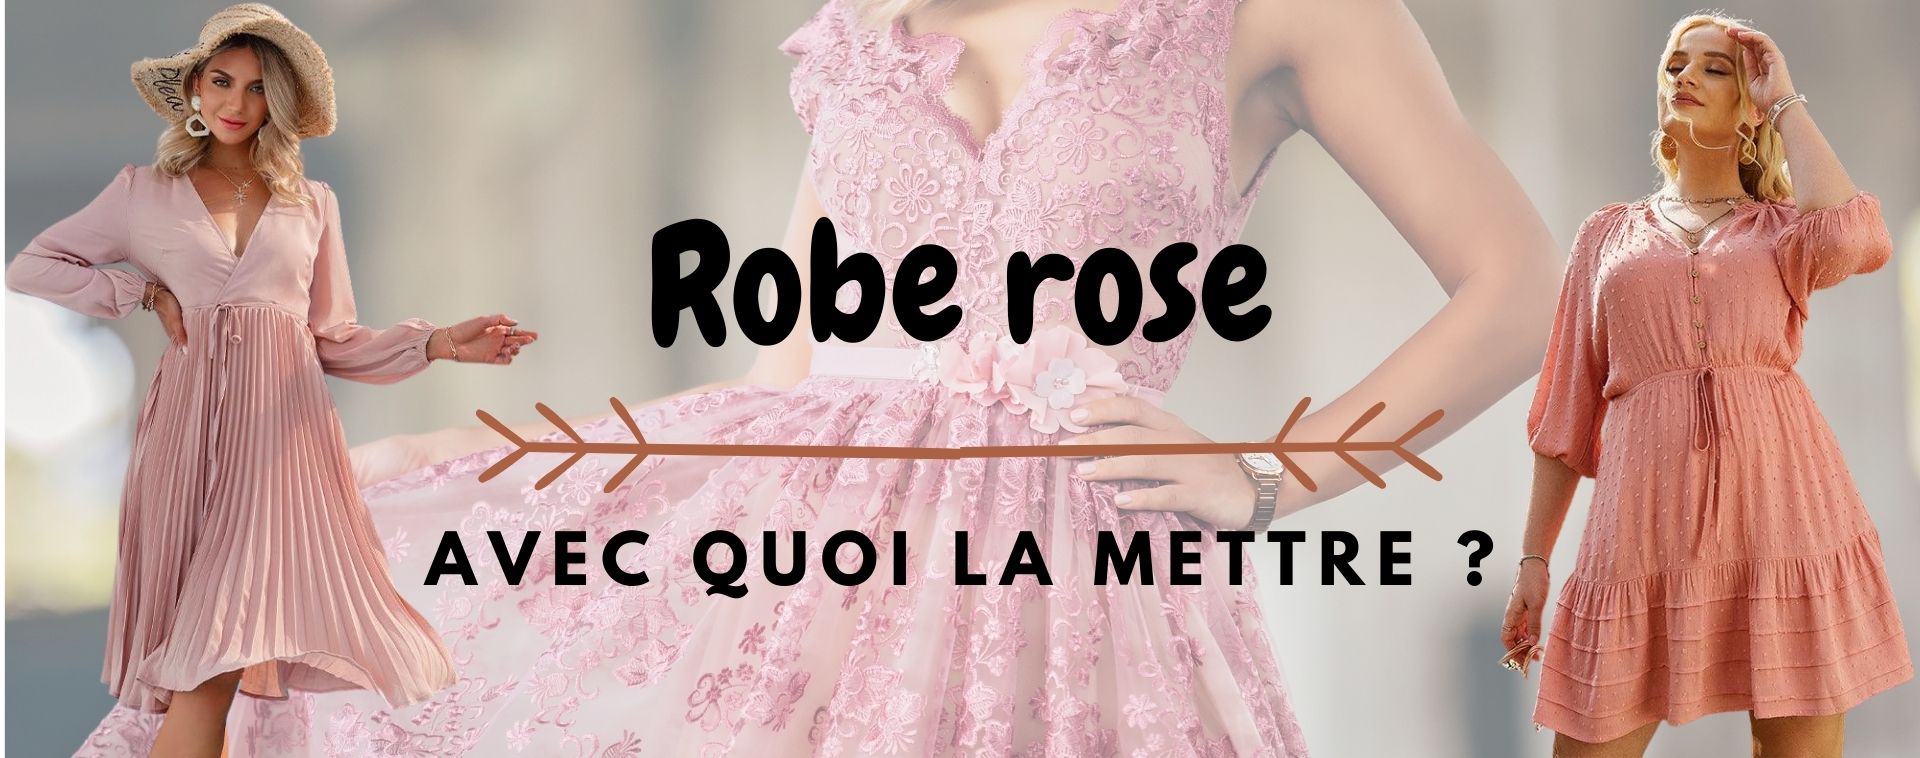 robe rose guide